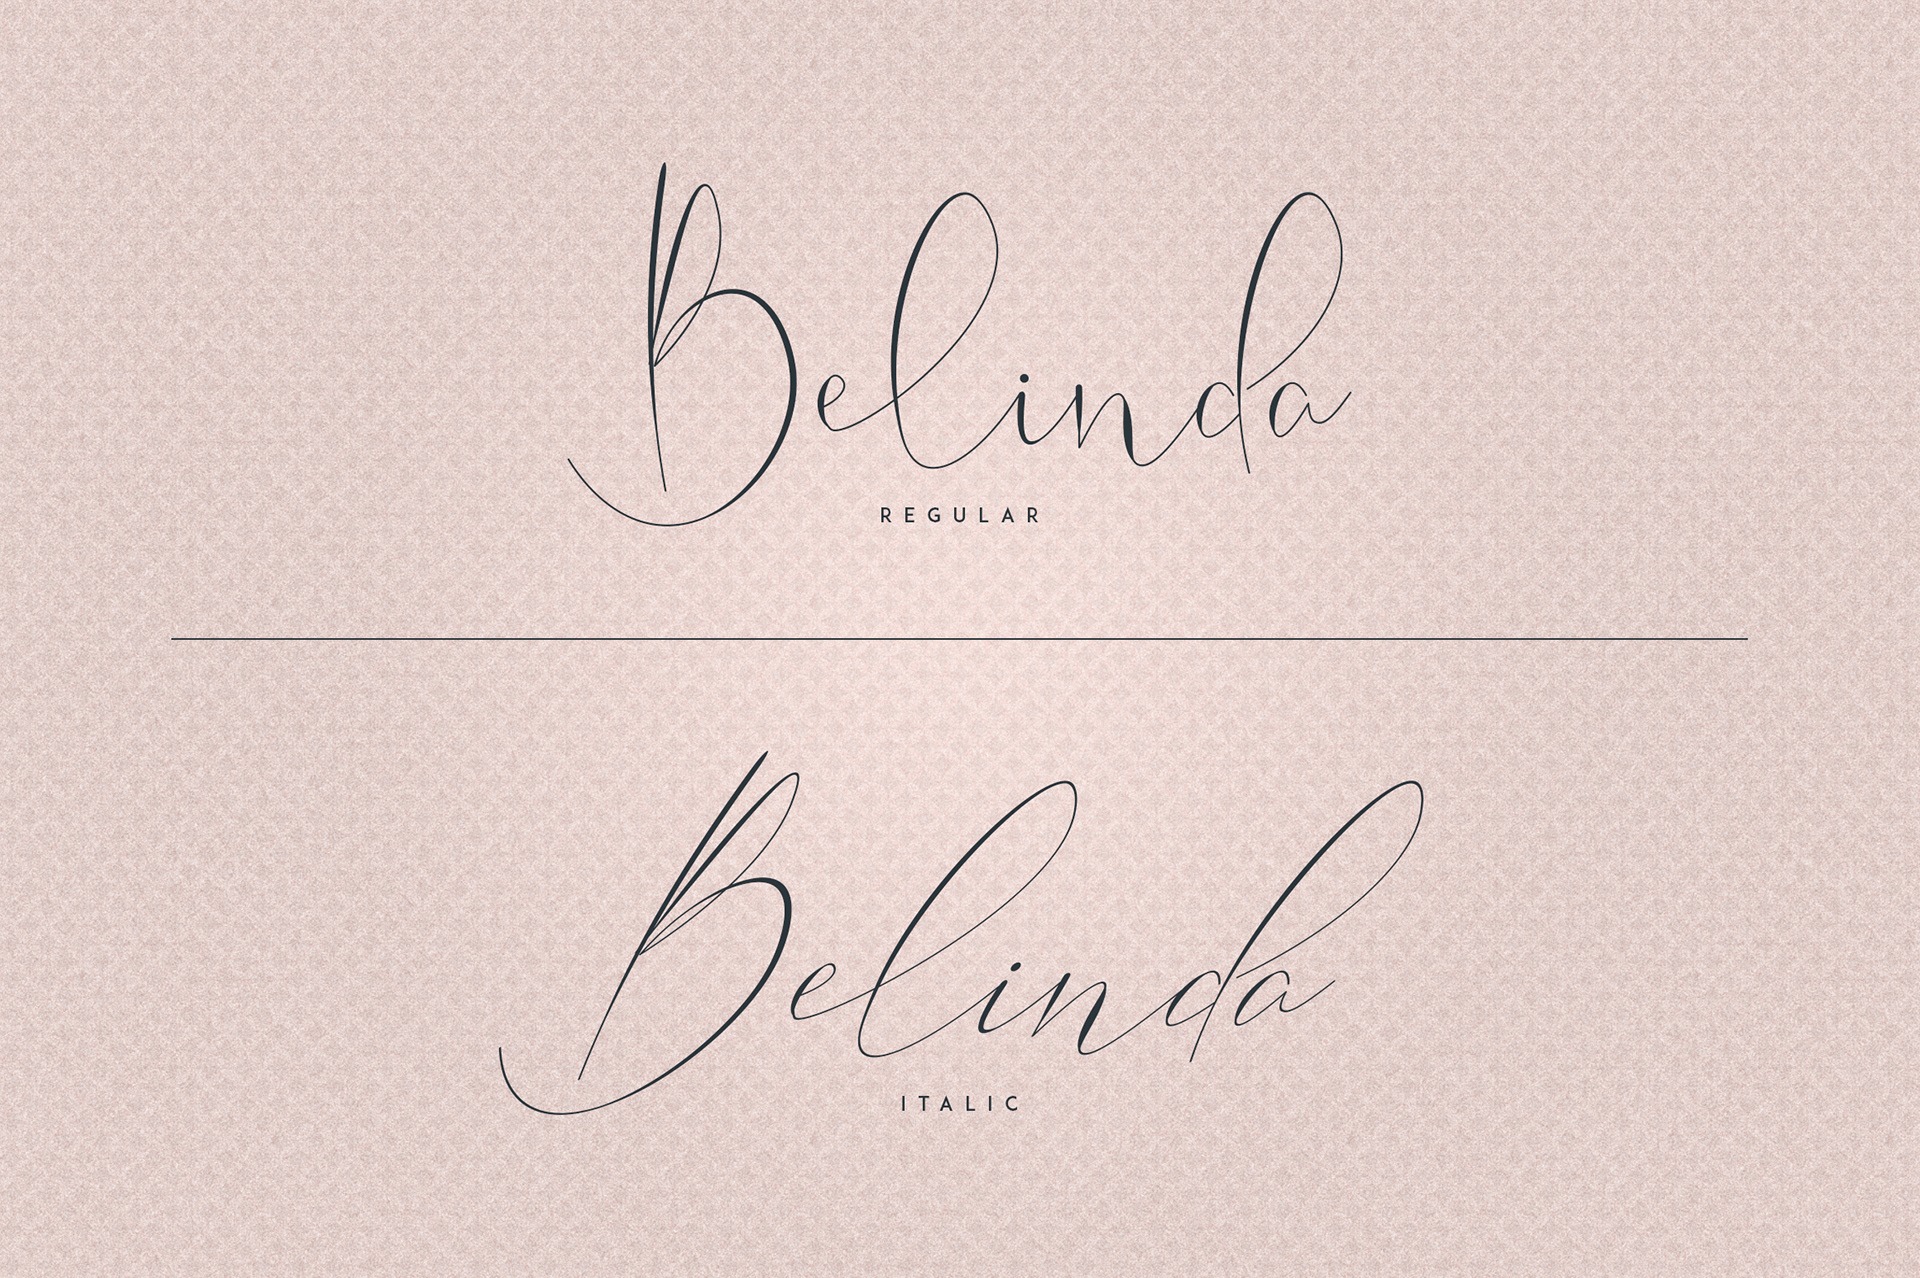 Example font Belinda #3